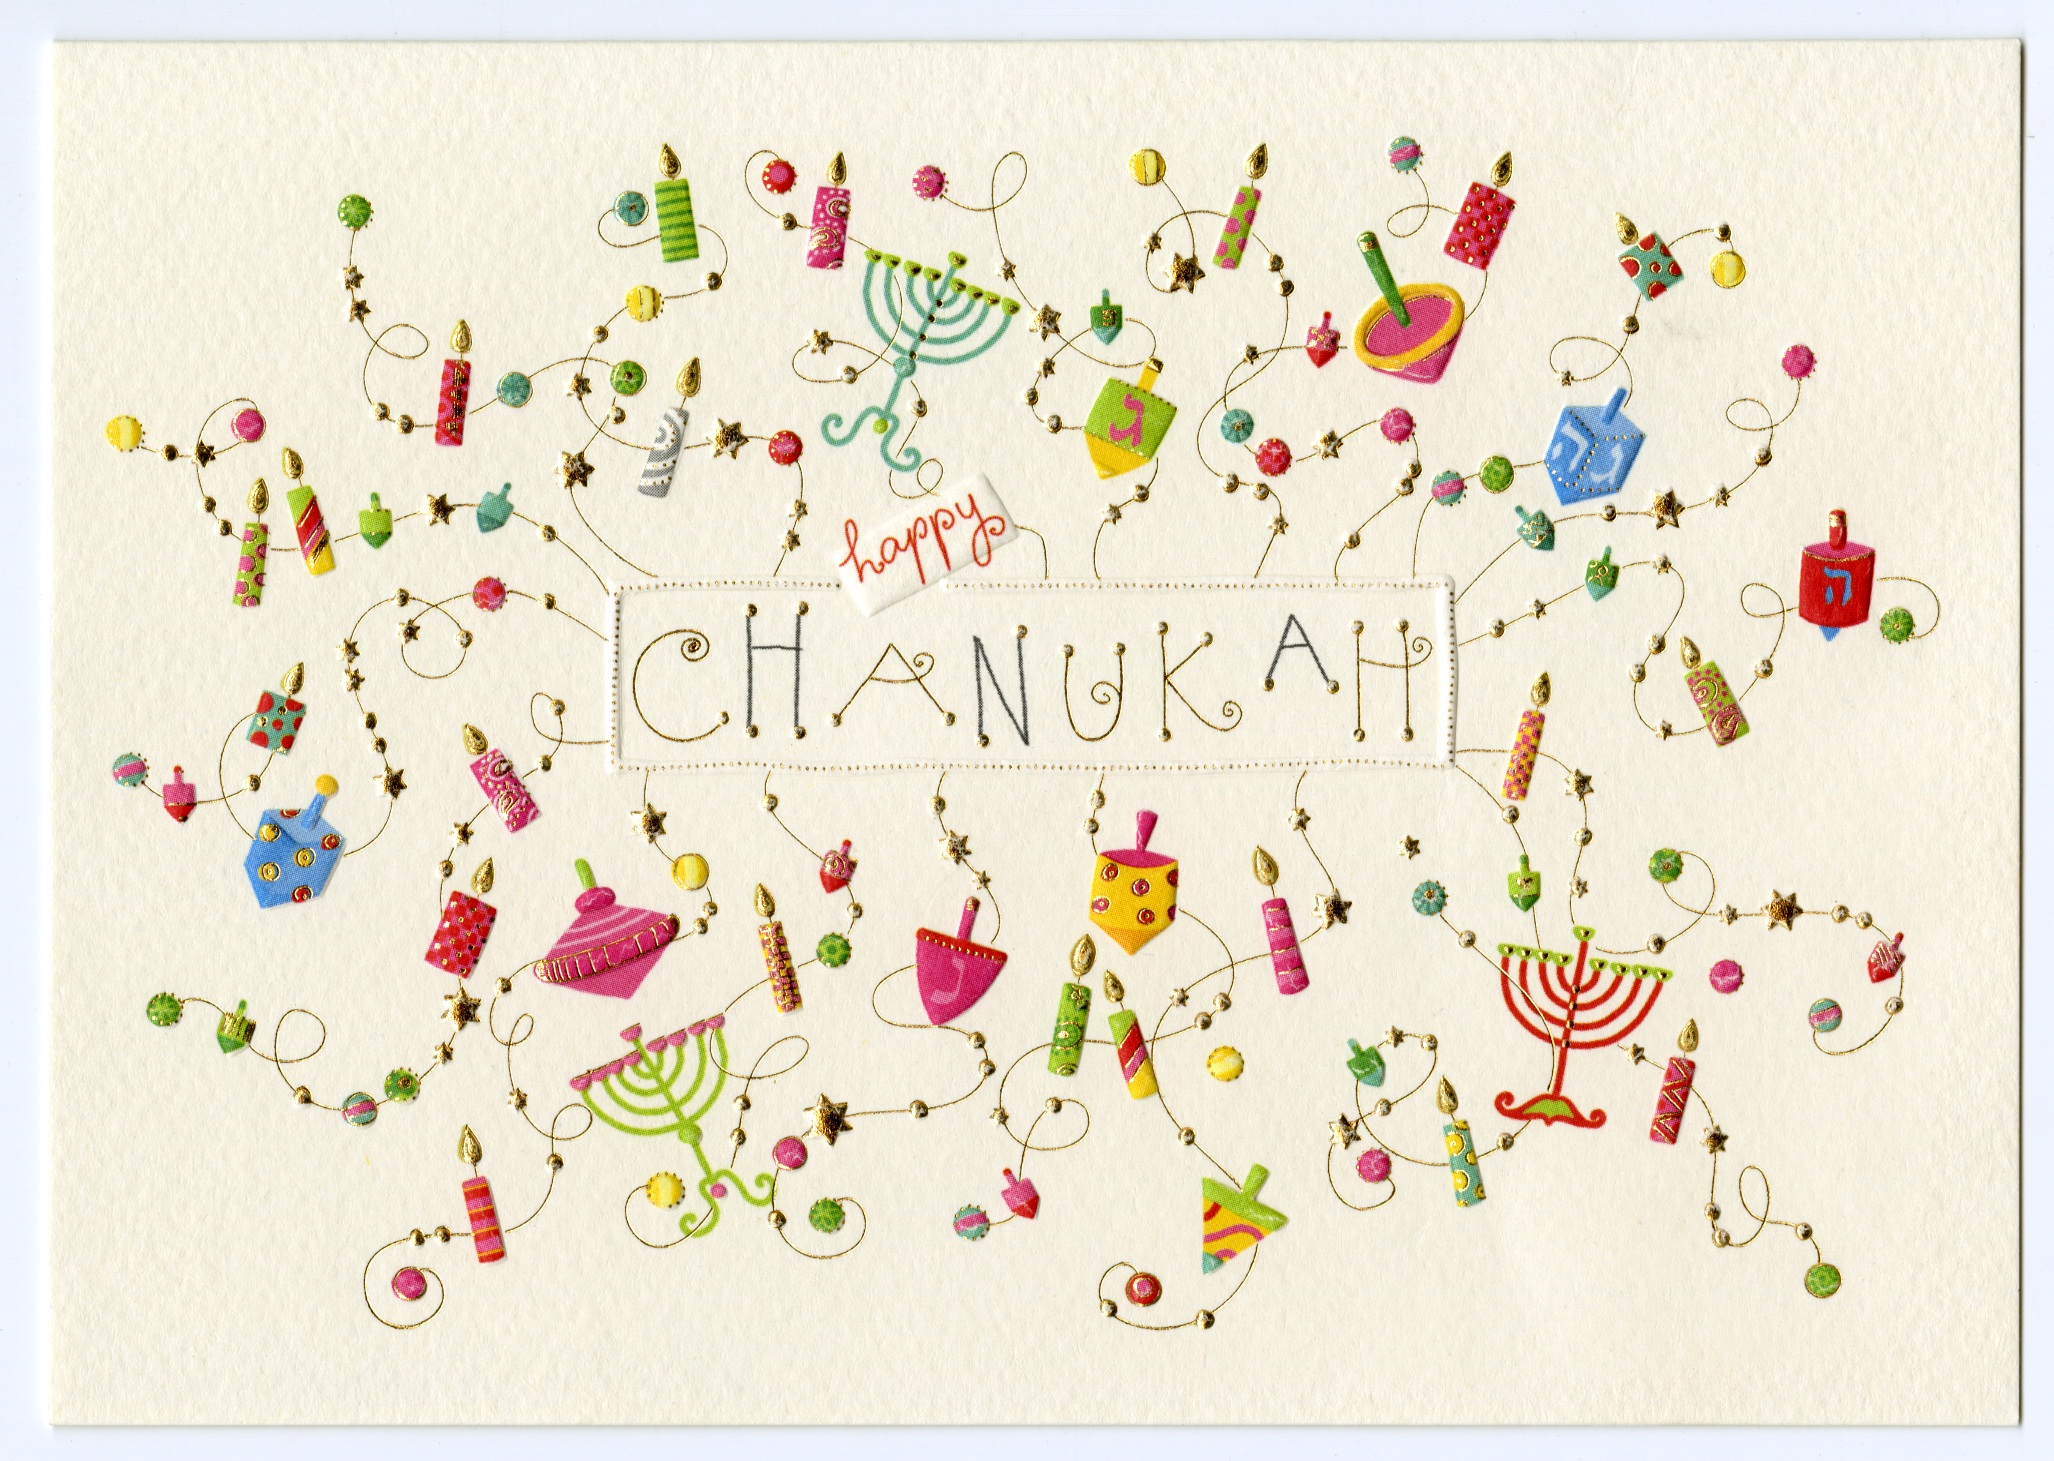 Postkarte mit der Aufschrift "happy Chanukah" und festlichen Symbolen